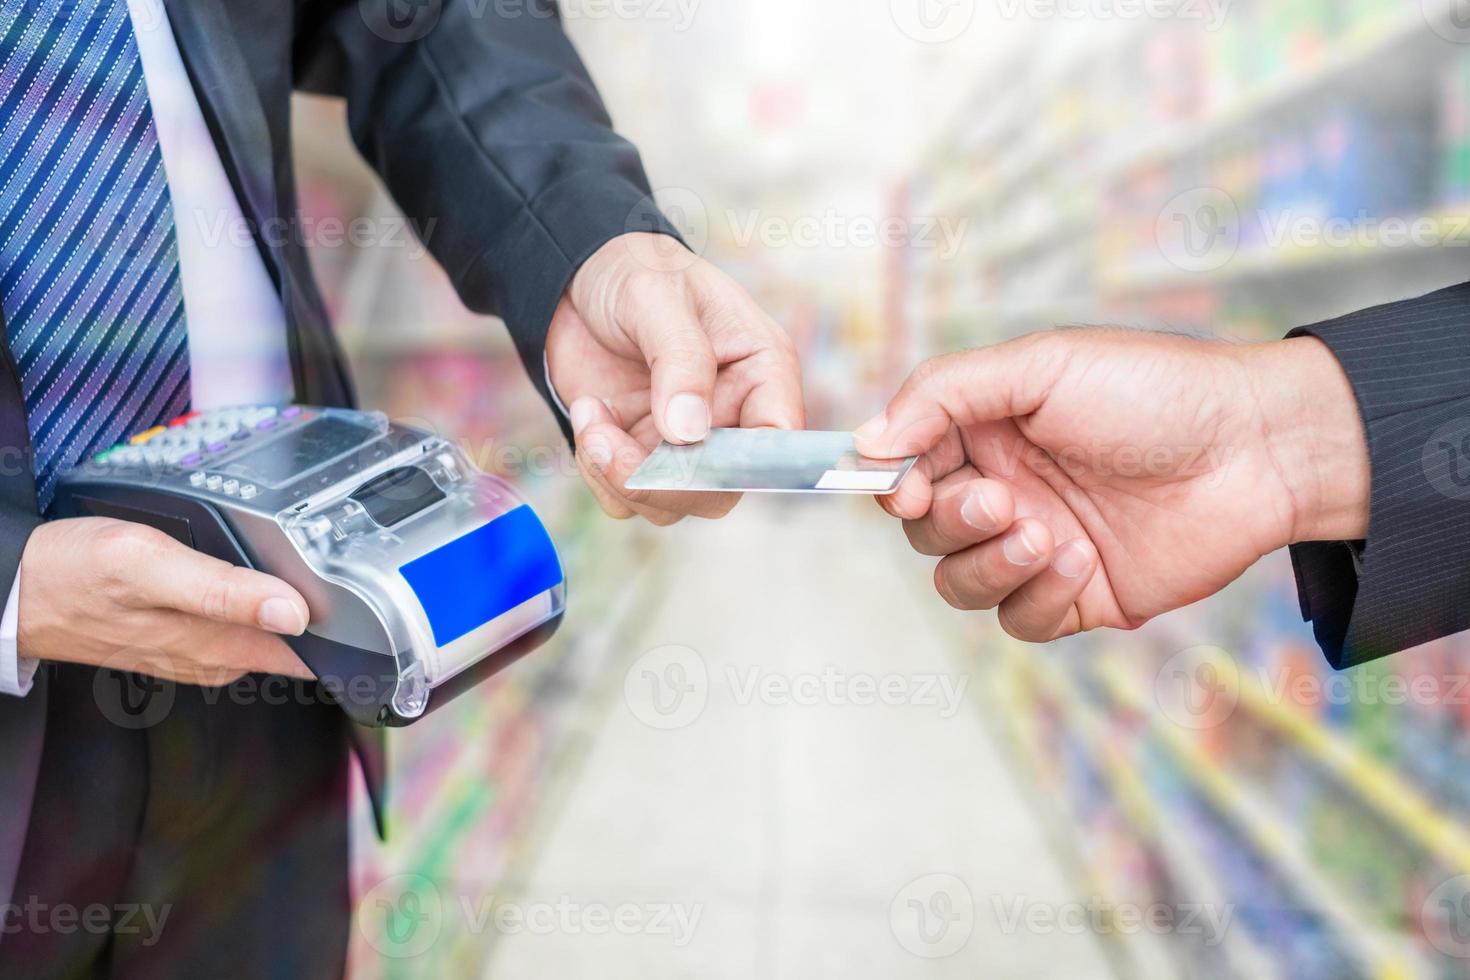 Mano sujetando pagar la tarjeta de crédito con el empresario mediante terminal de pago en la tienda del supermercado foto